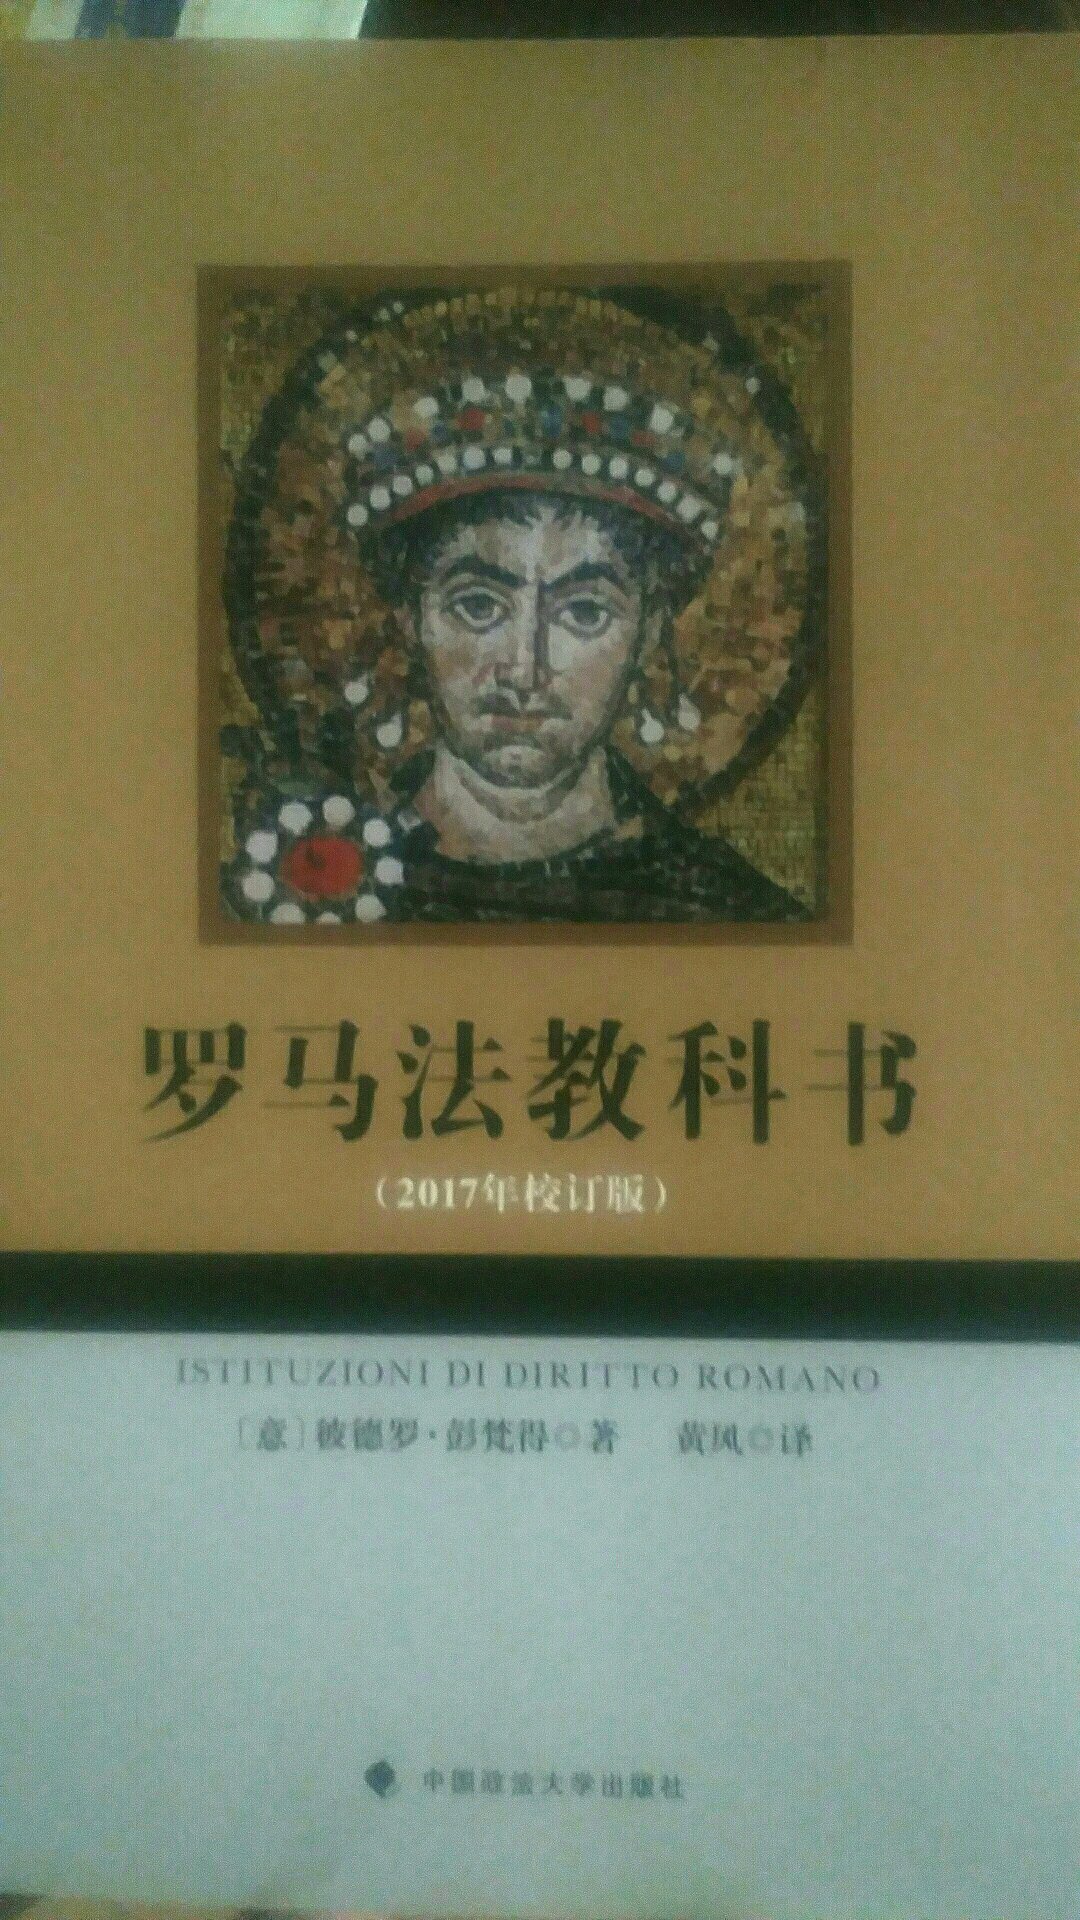 经典图书重要性不容置疑，常看常新，是一本值得珍藏的学习研究罗马法的不二著作。